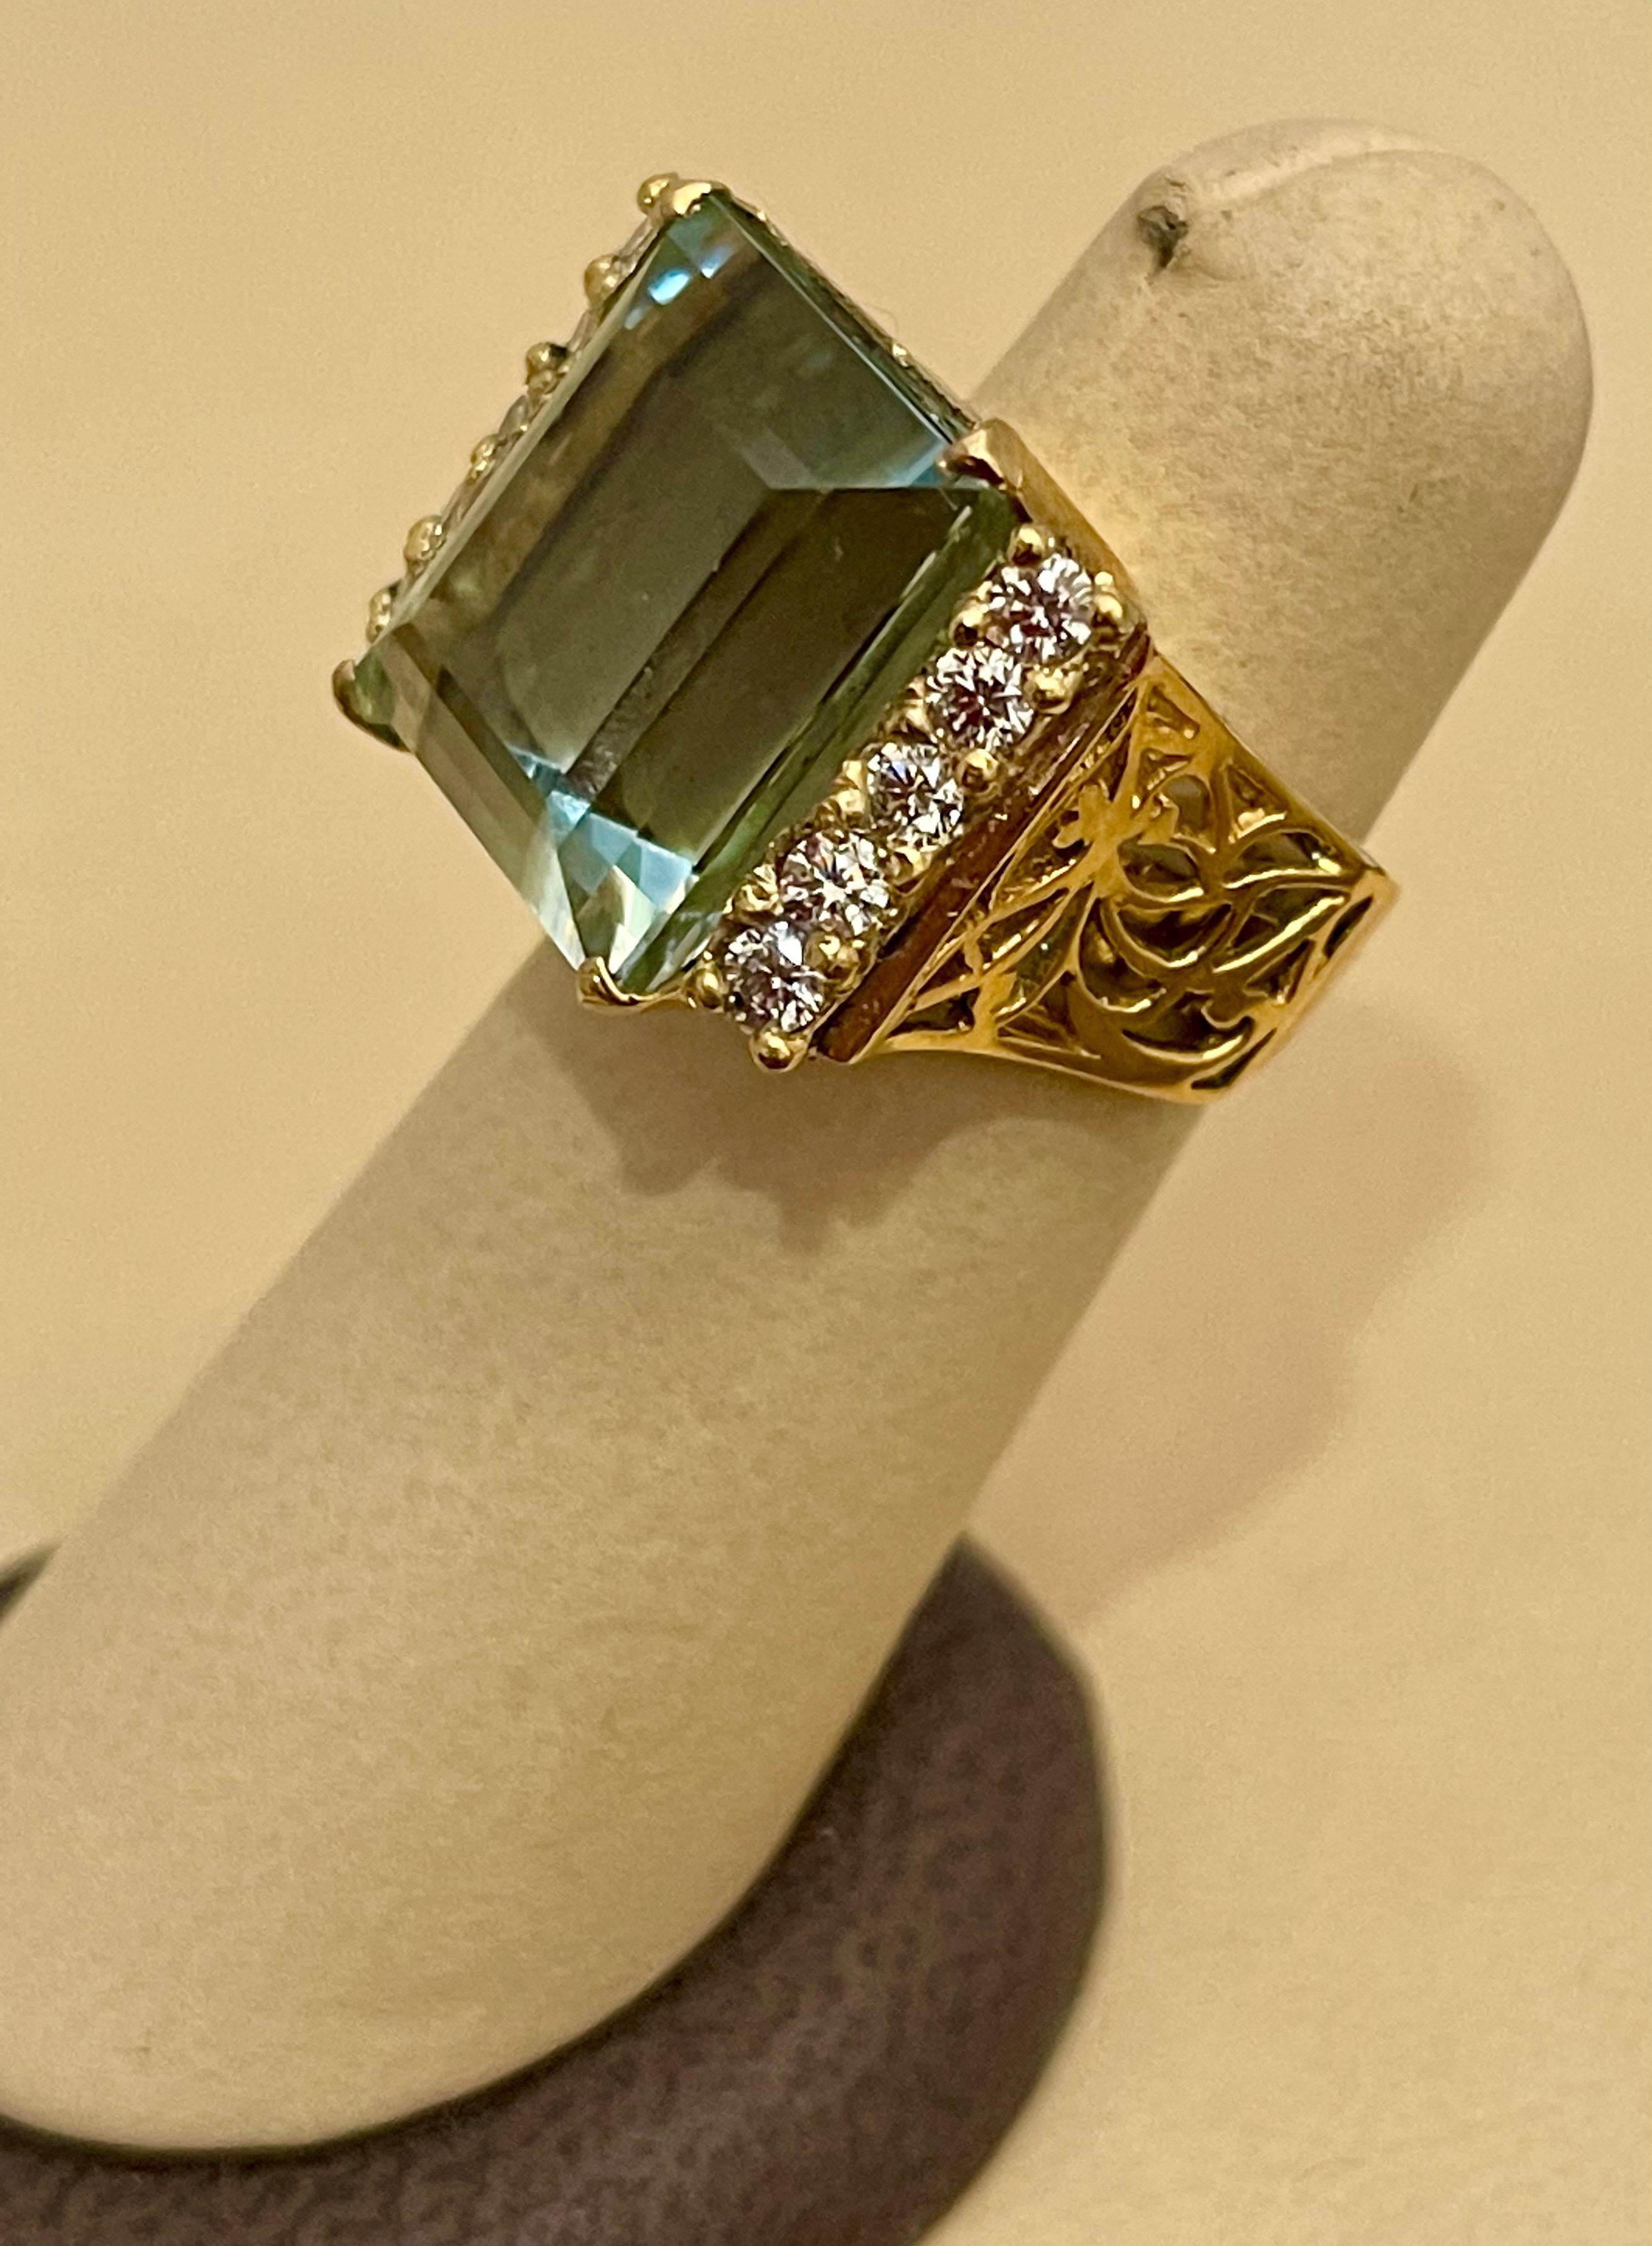 19 Carat Natural Aquamarine and Diamond Cocktail Ring, 14 Karat Yellow Gold 6